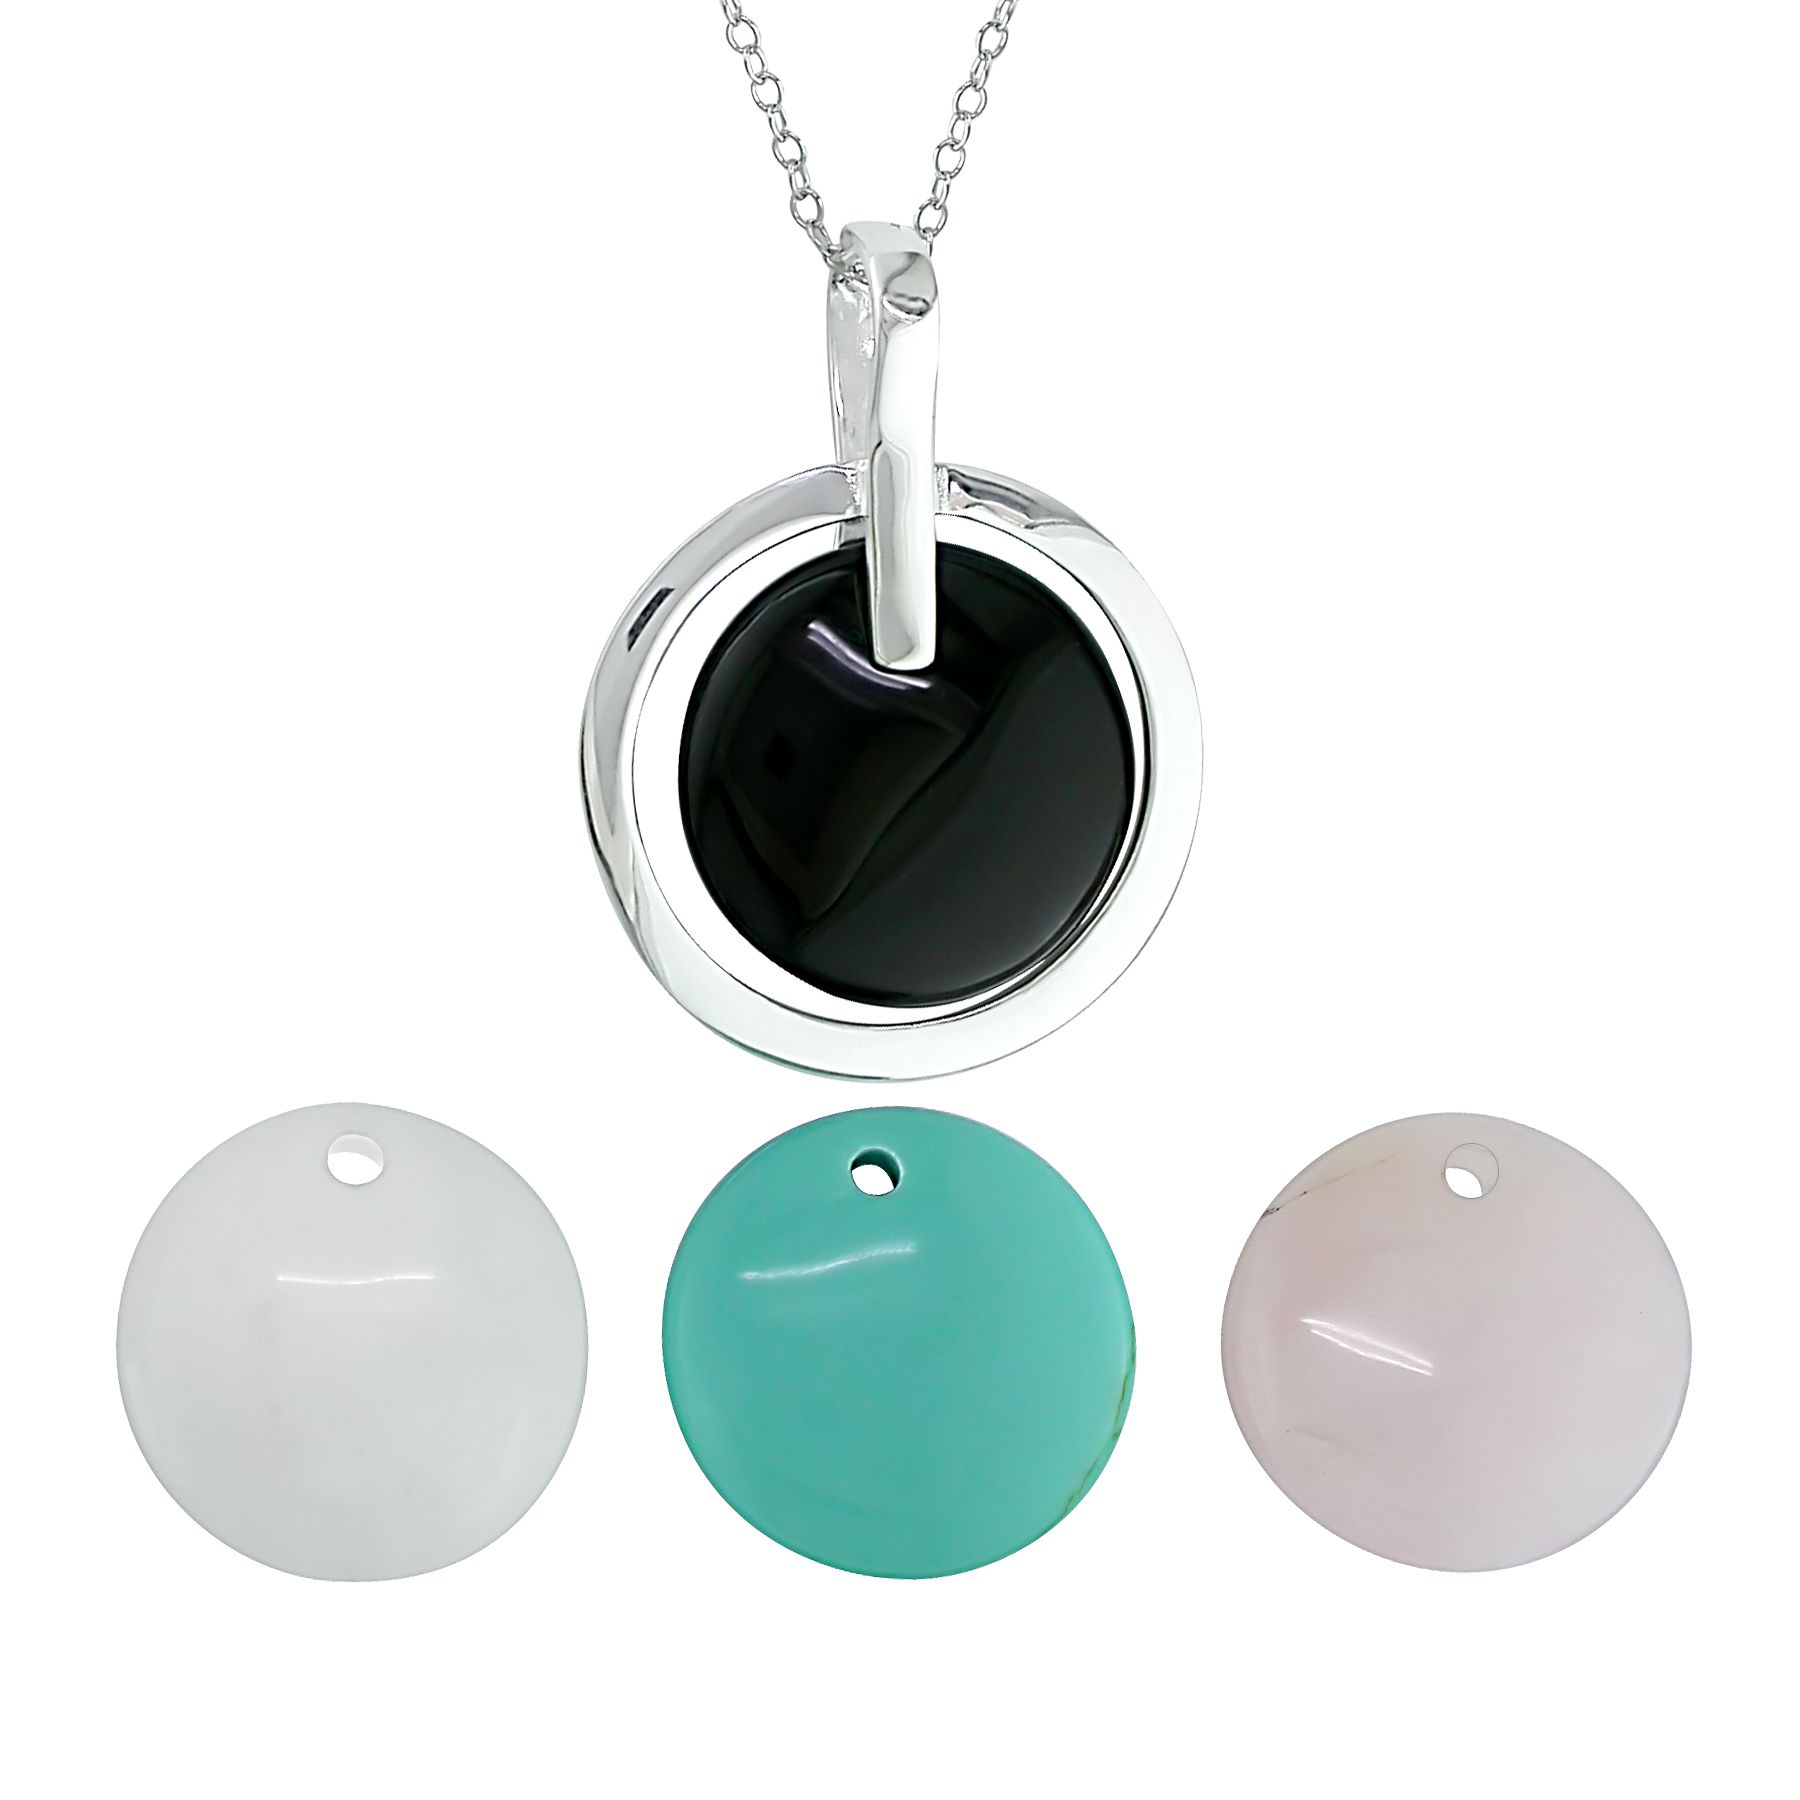 Onyx, Rose Quartz, White Quartz & Turquoise Pendant, Set of 4, 18